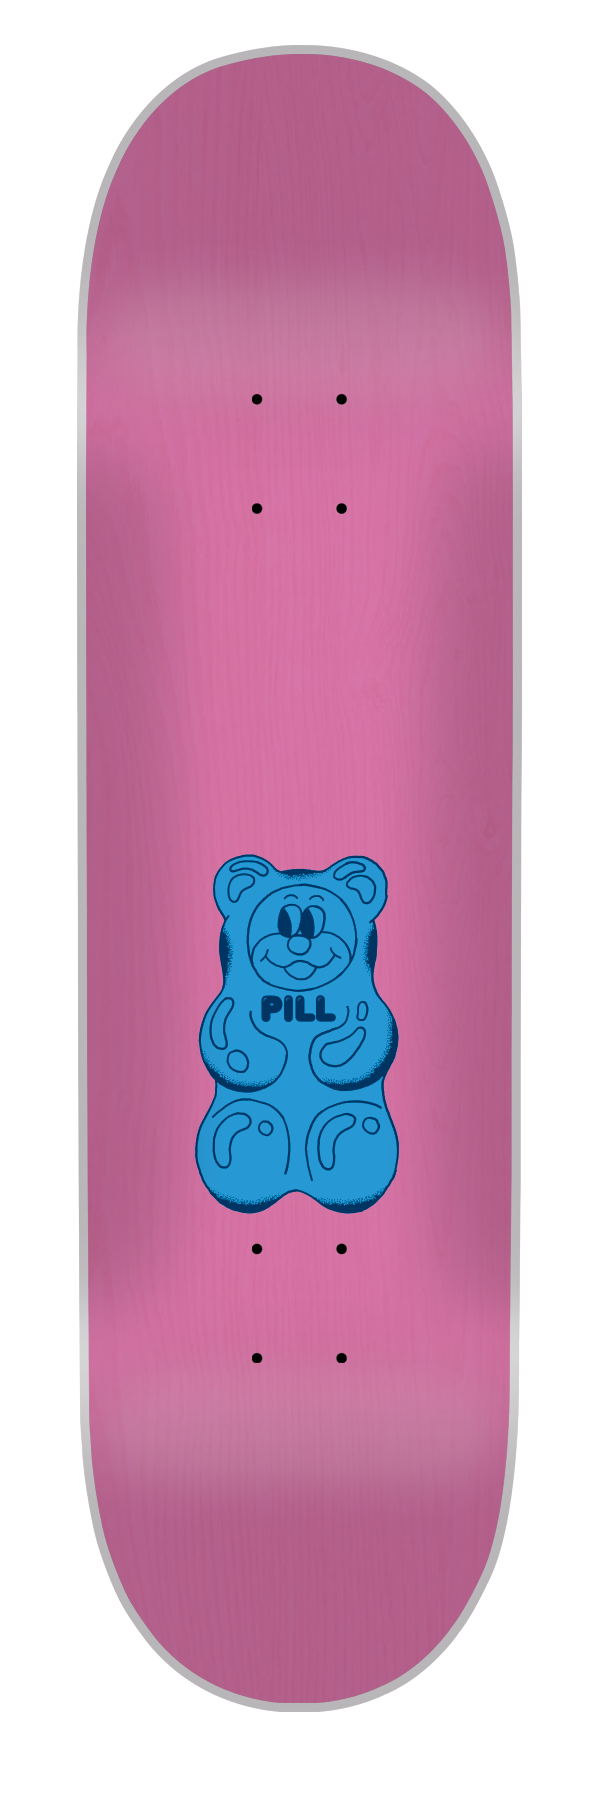 Pill - Tabla Gummy Bear Blue 8.5x32 - Lo Mejor De The Pill Company - Solo Por $29990! Compra Ahora En Wallride Skateshop